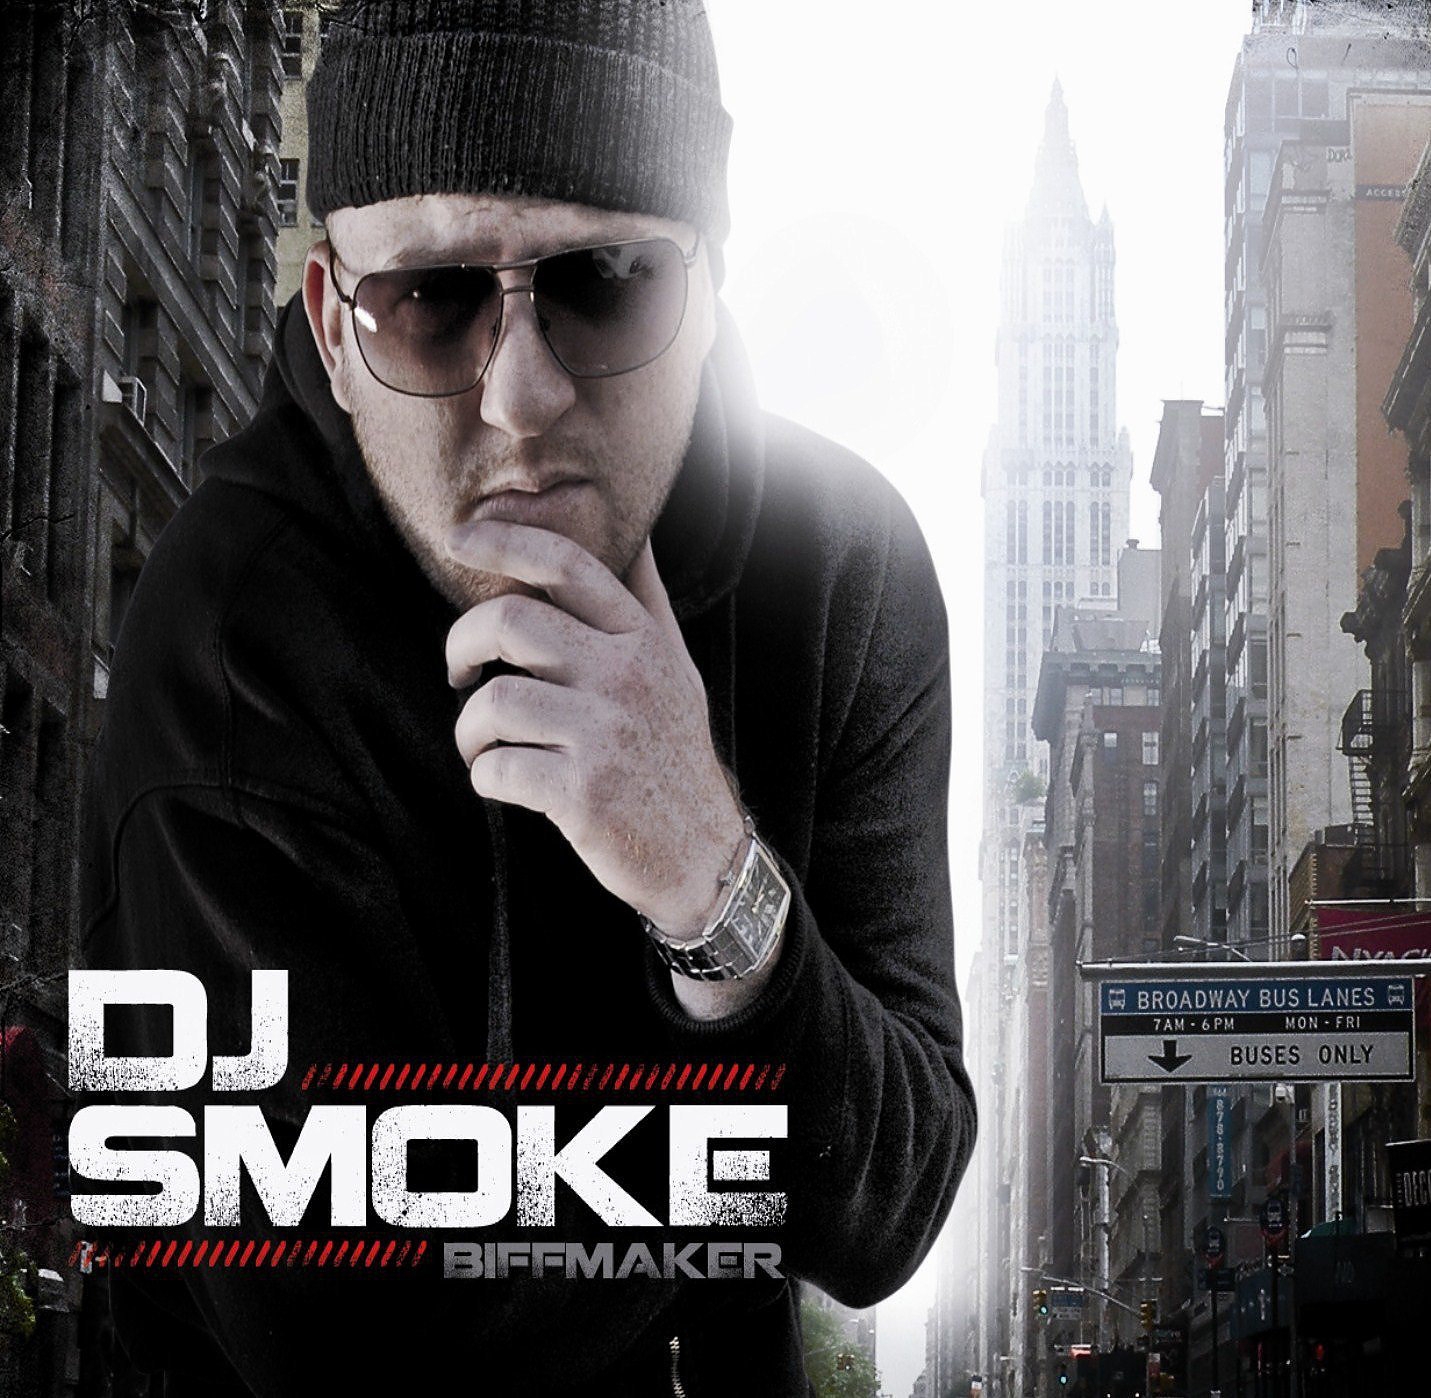 Album Vinyle "DJ Smoke" -Biffmaker de dj smoke sur Scredboutique.com